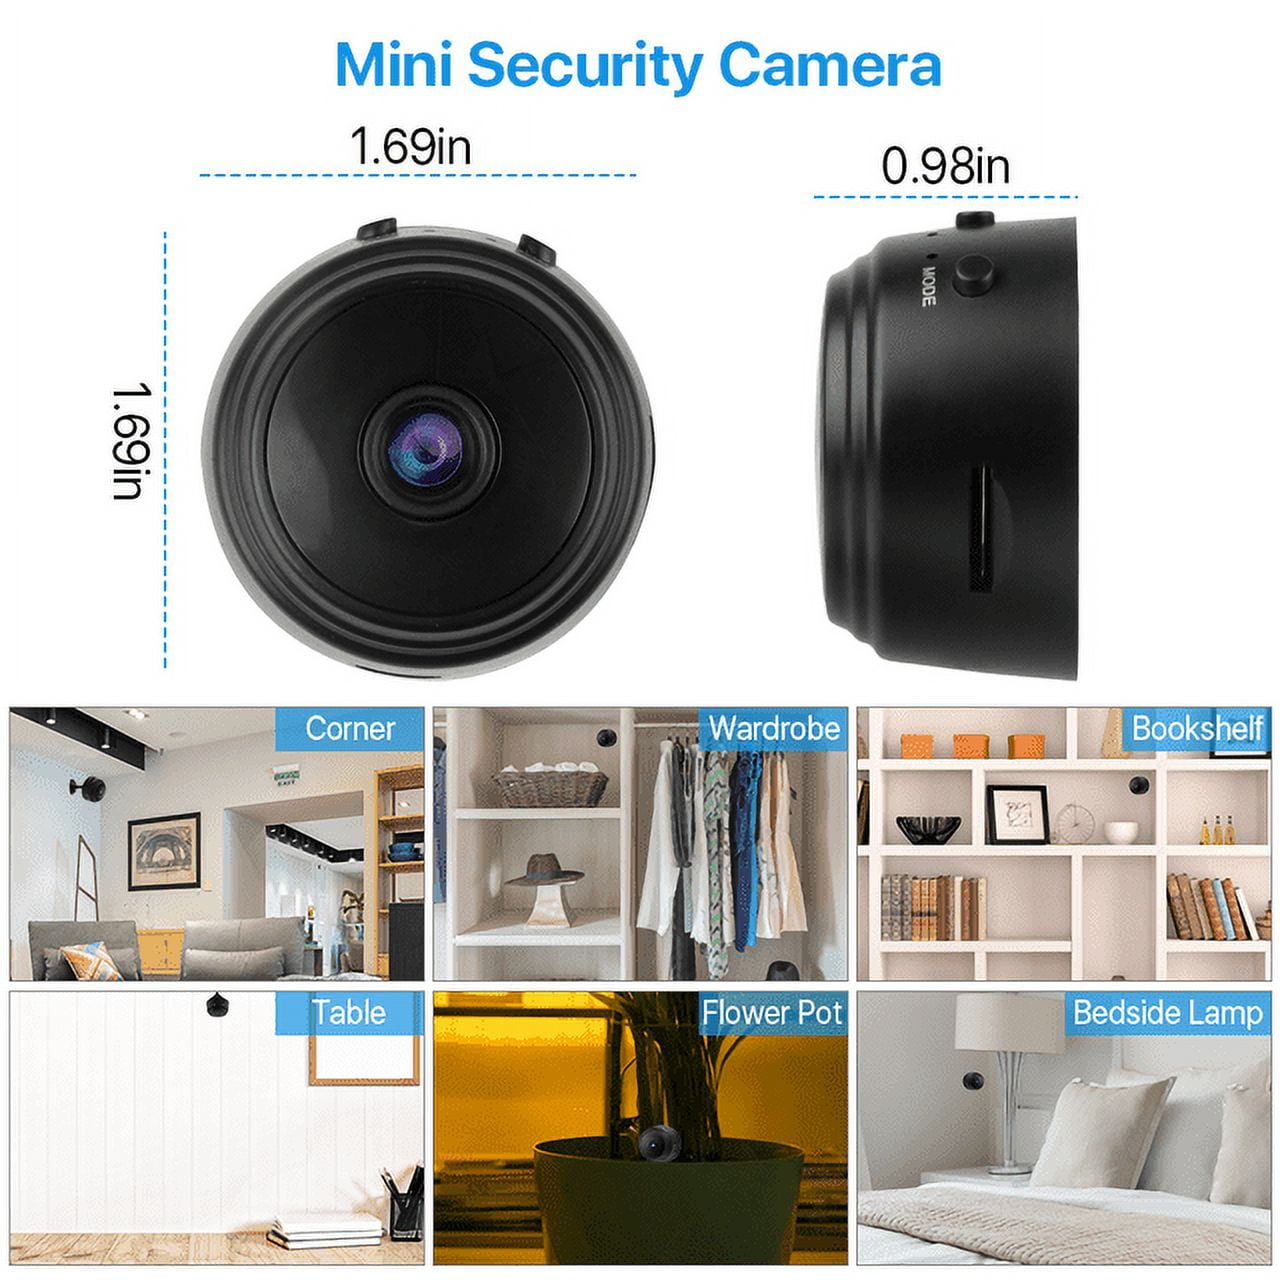 32gb Caméra Espion Mini Caméra Hd Dvr 1080p Caméra Infrarouge Vision  Nocturne Petite Nounou Caméra Support Détection de Mouvement Pour Home  Surveillance Voiture Drone Fic